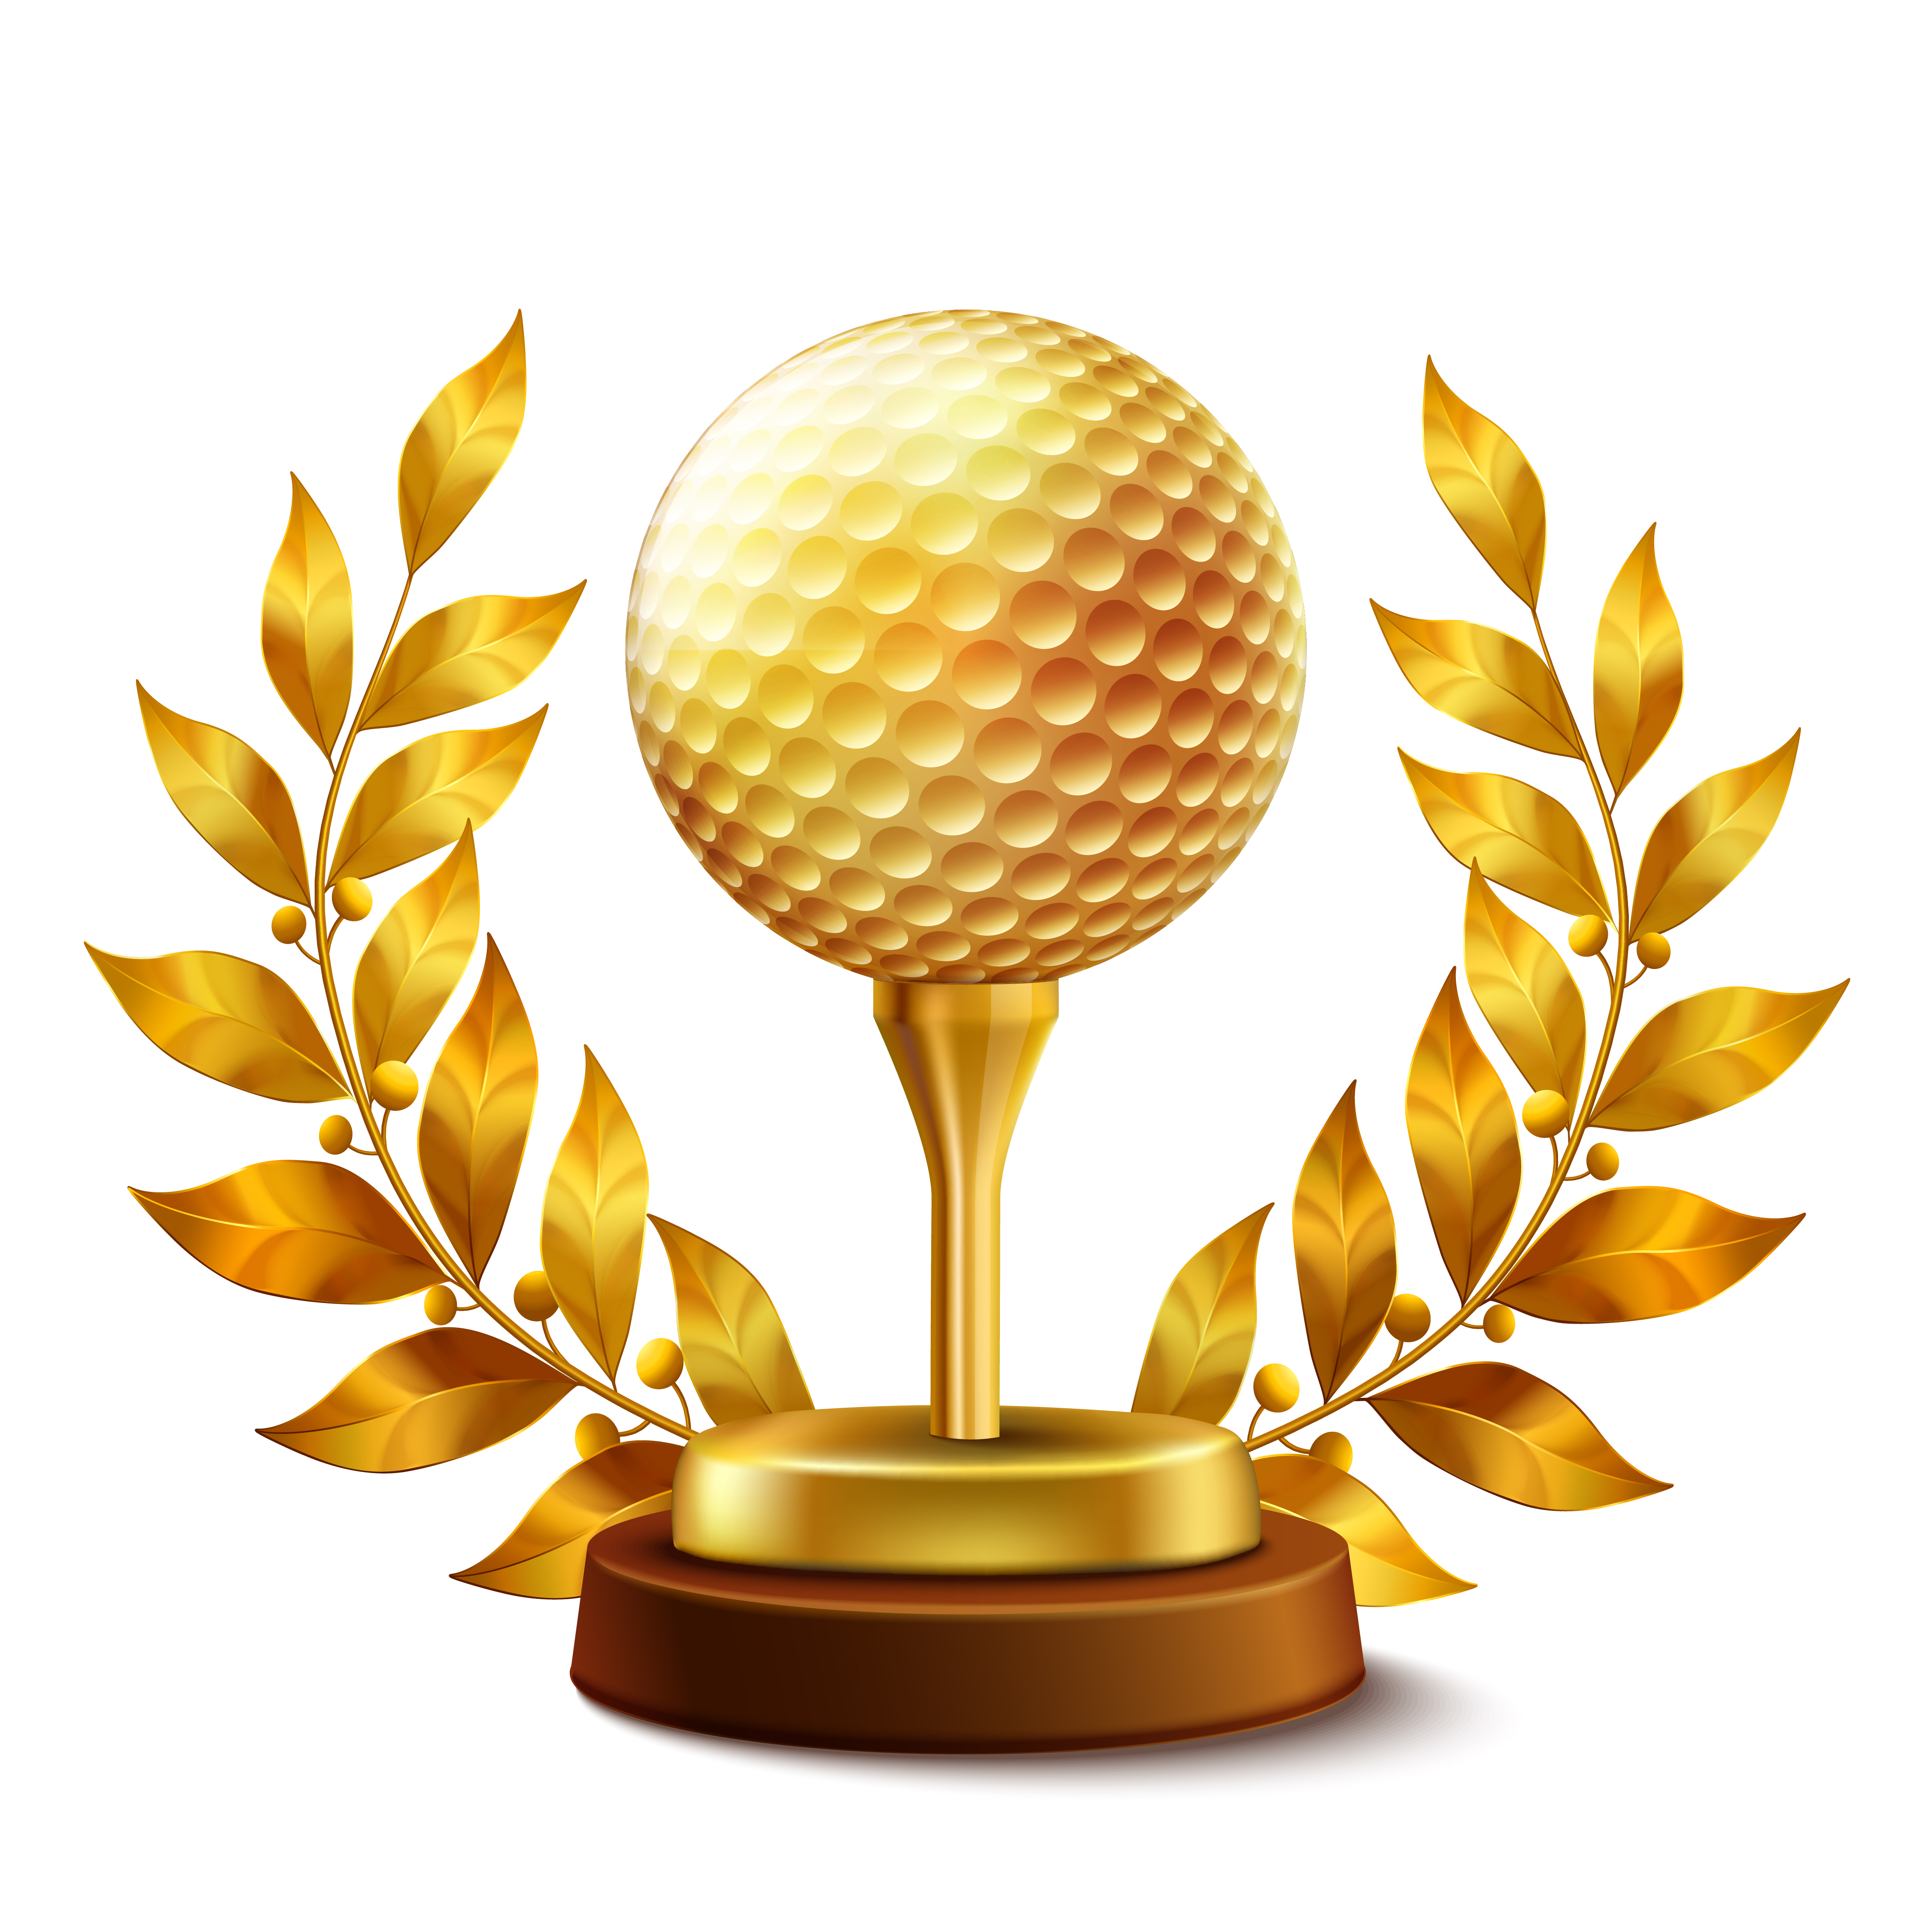 Golden golf award 466973 Vector Art at Vecteezy